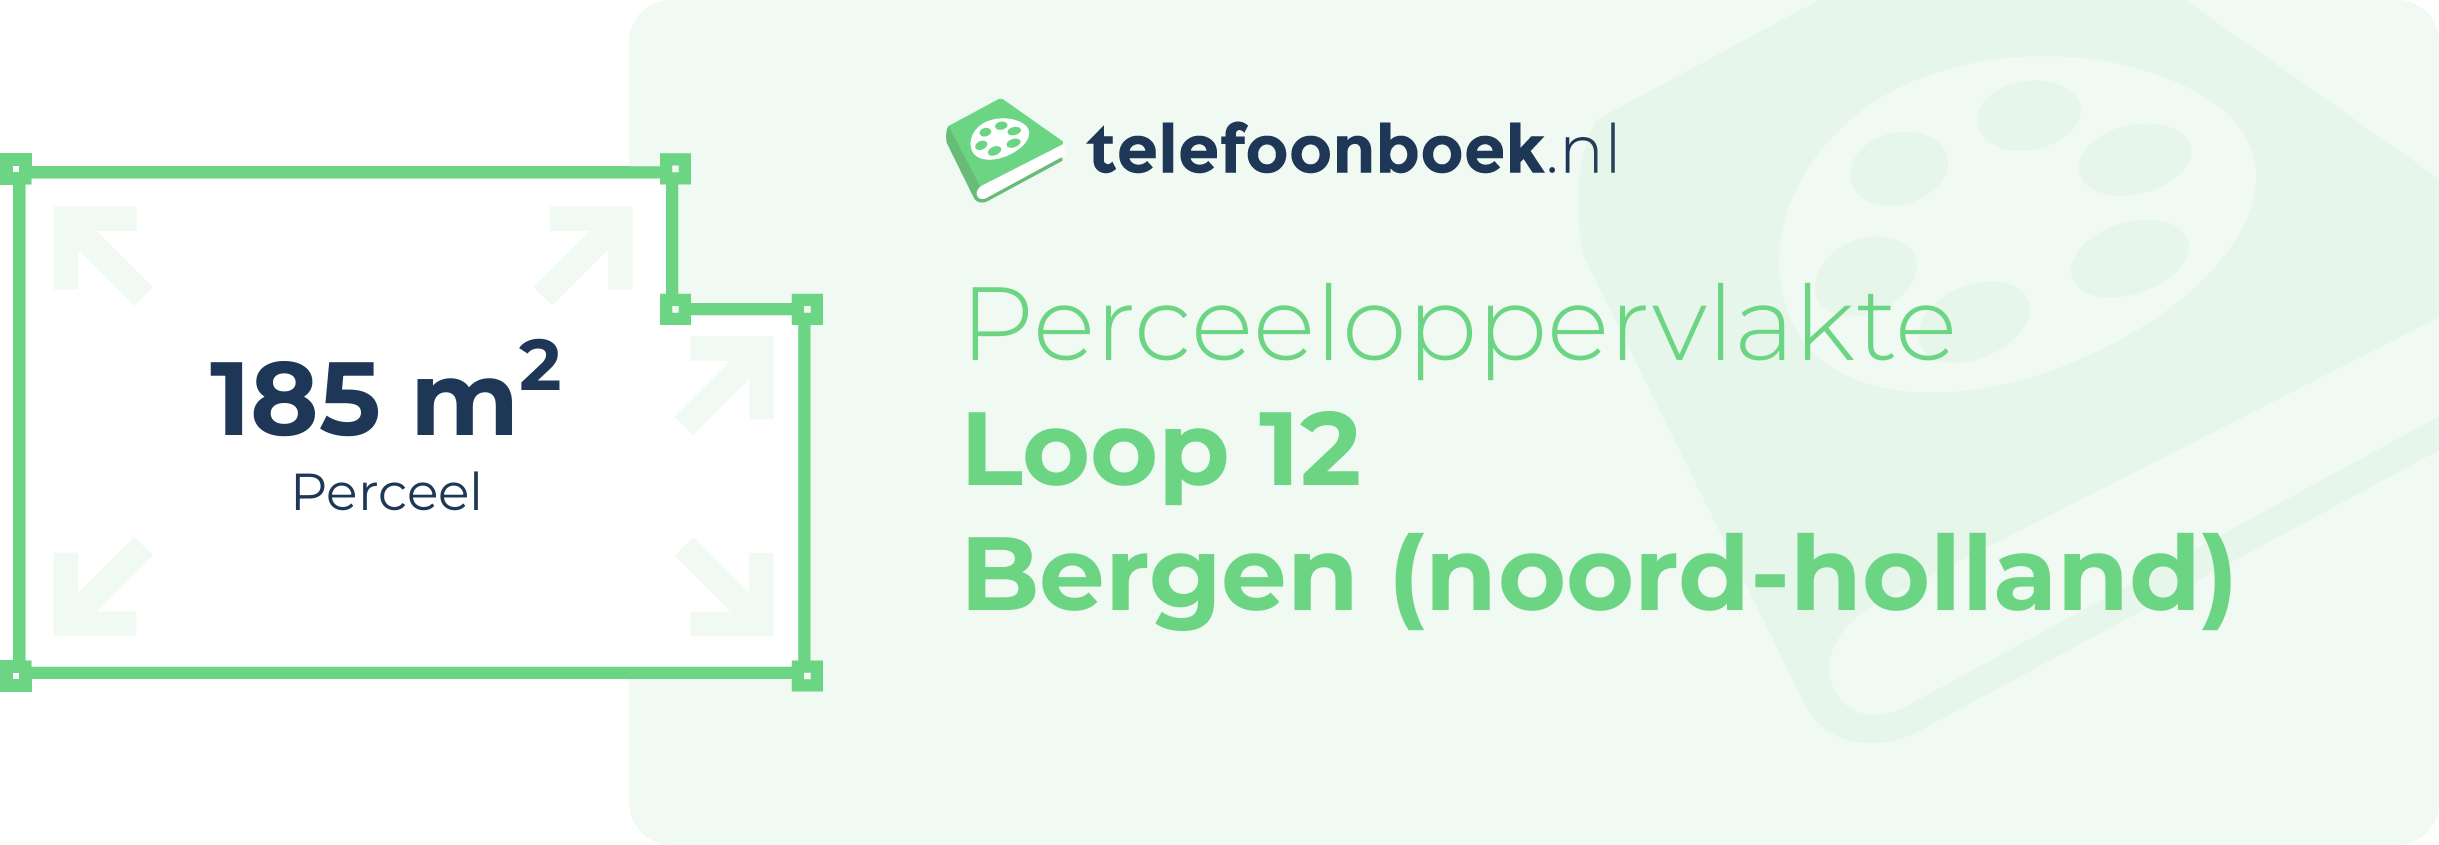 Perceeloppervlakte Loop 12 Bergen (Noord-Holland)